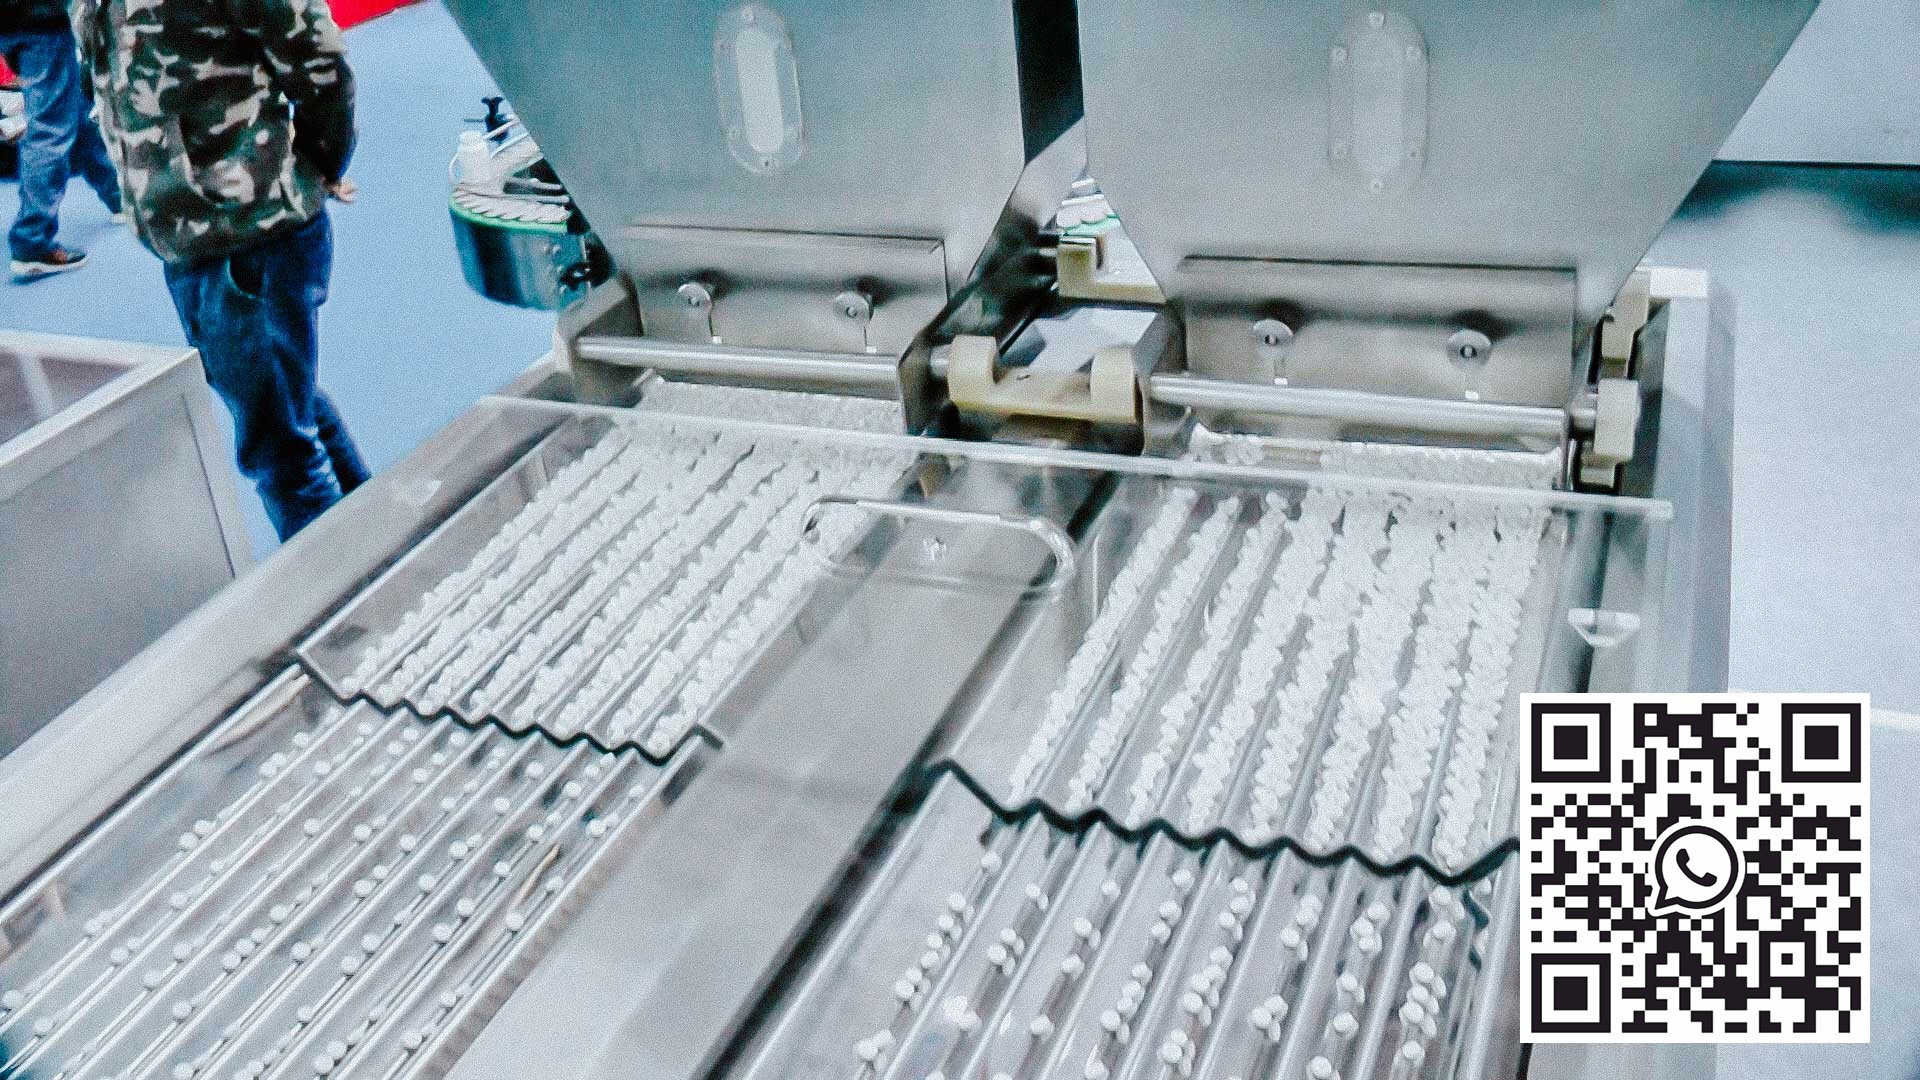 آلة تغليف وعد لكبسولات وأقراص الجيلاتين الصلبة في عبوات بلاستيكية أسبانيا